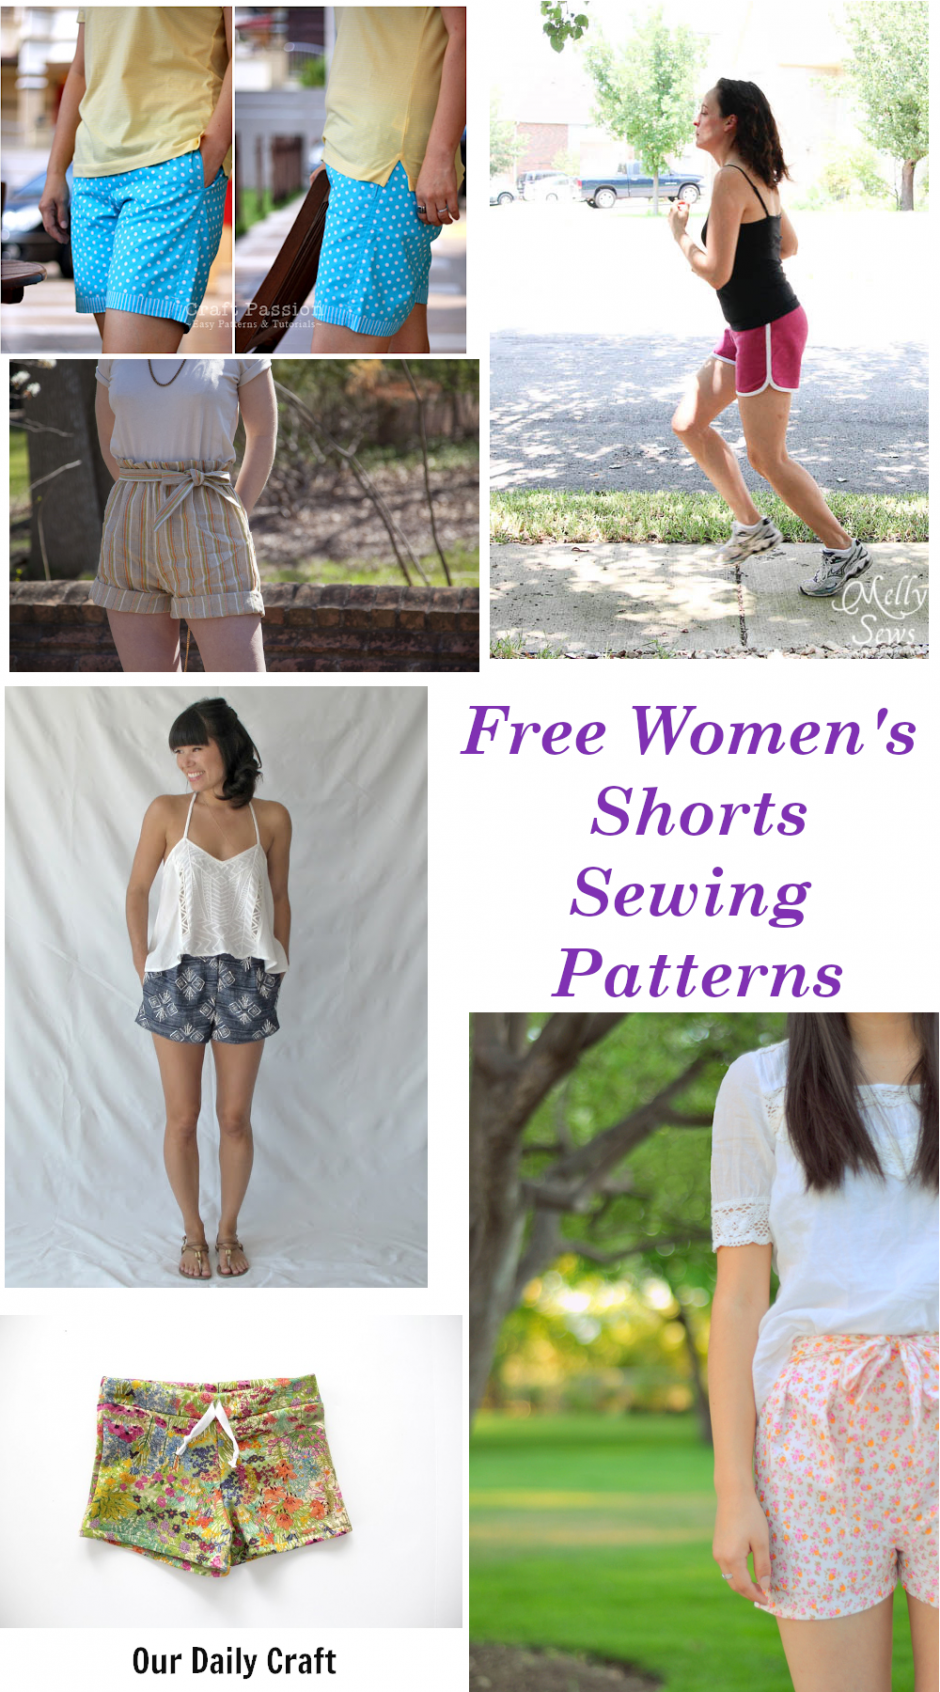 Free Sewing Patterns - Kids Shorts!